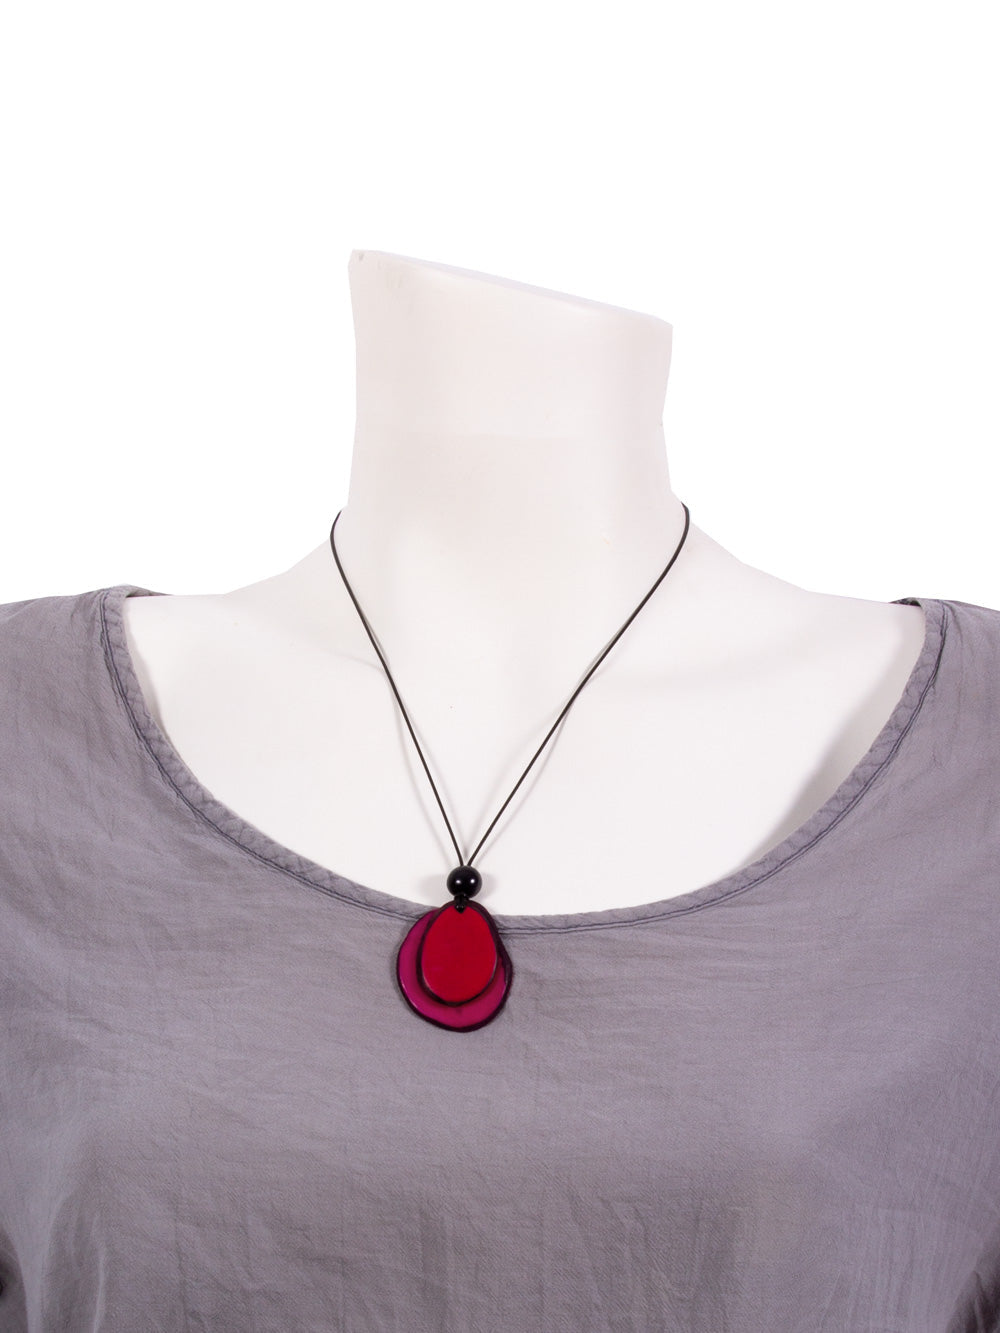 Halskette Chiloete purpurrot/rot